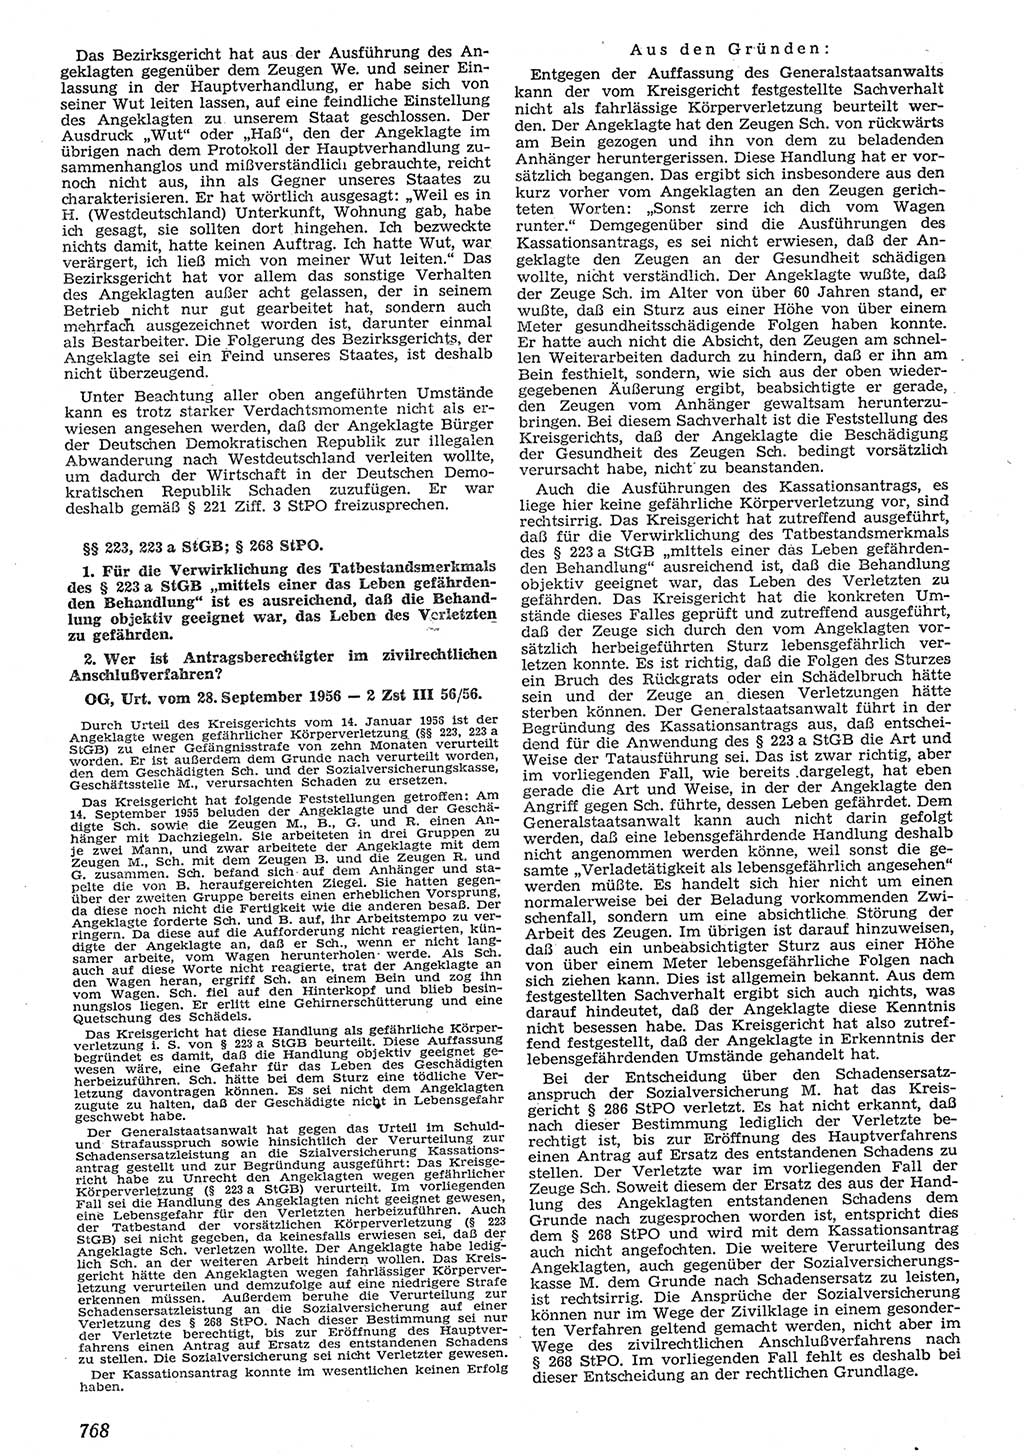 Neue Justiz (NJ), Zeitschrift für Recht und Rechtswissenschaft [Deutsche Demokratische Republik (DDR)], 10. Jahrgang 1956, Seite 768 (NJ DDR 1956, S. 768)